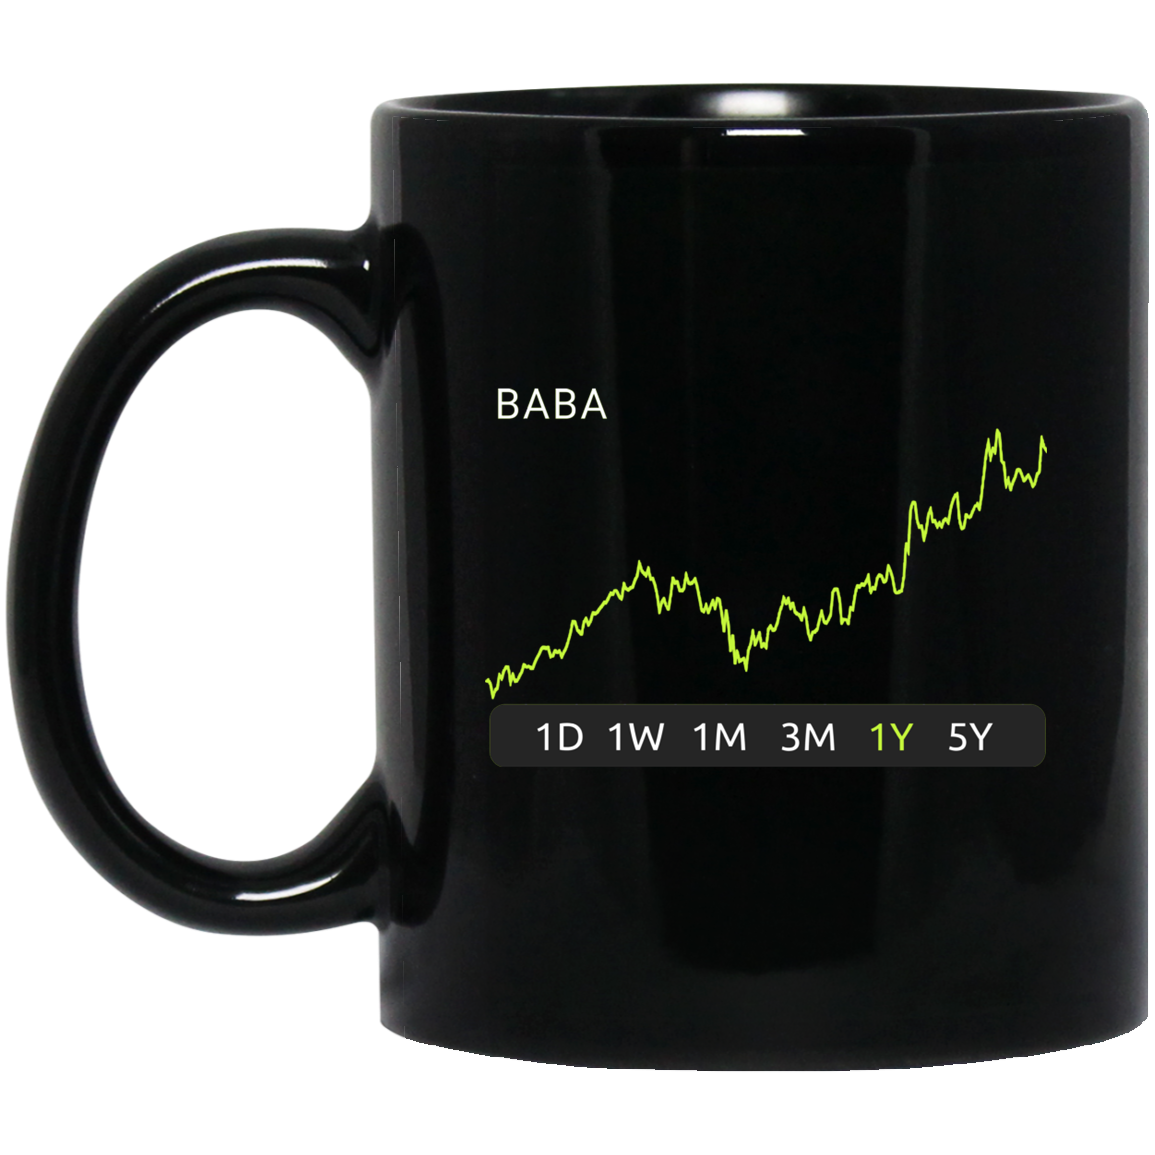 BABA Stock 1y Mug